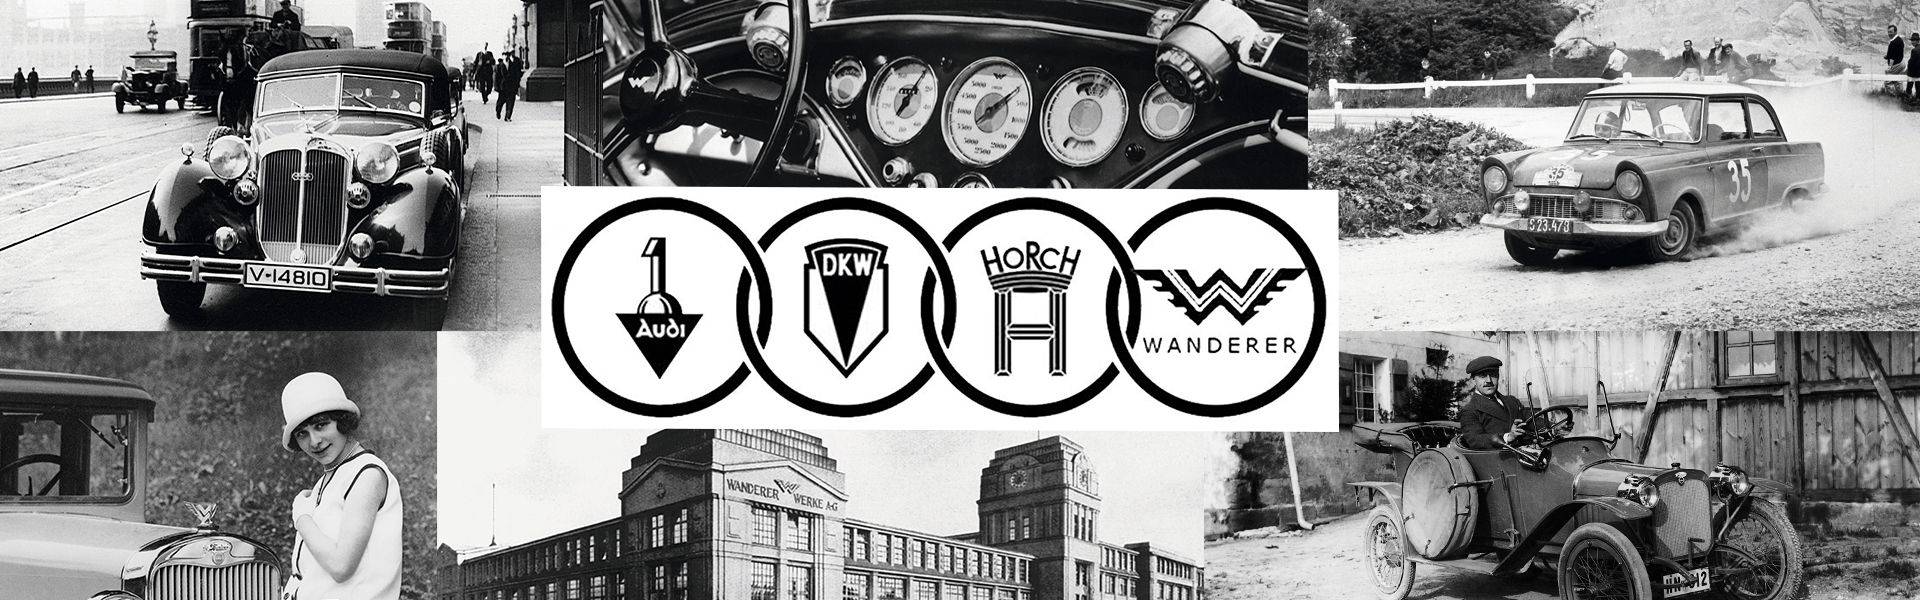 12 Best Vehicle Logos ideas  logos, car logos, vehicle logos